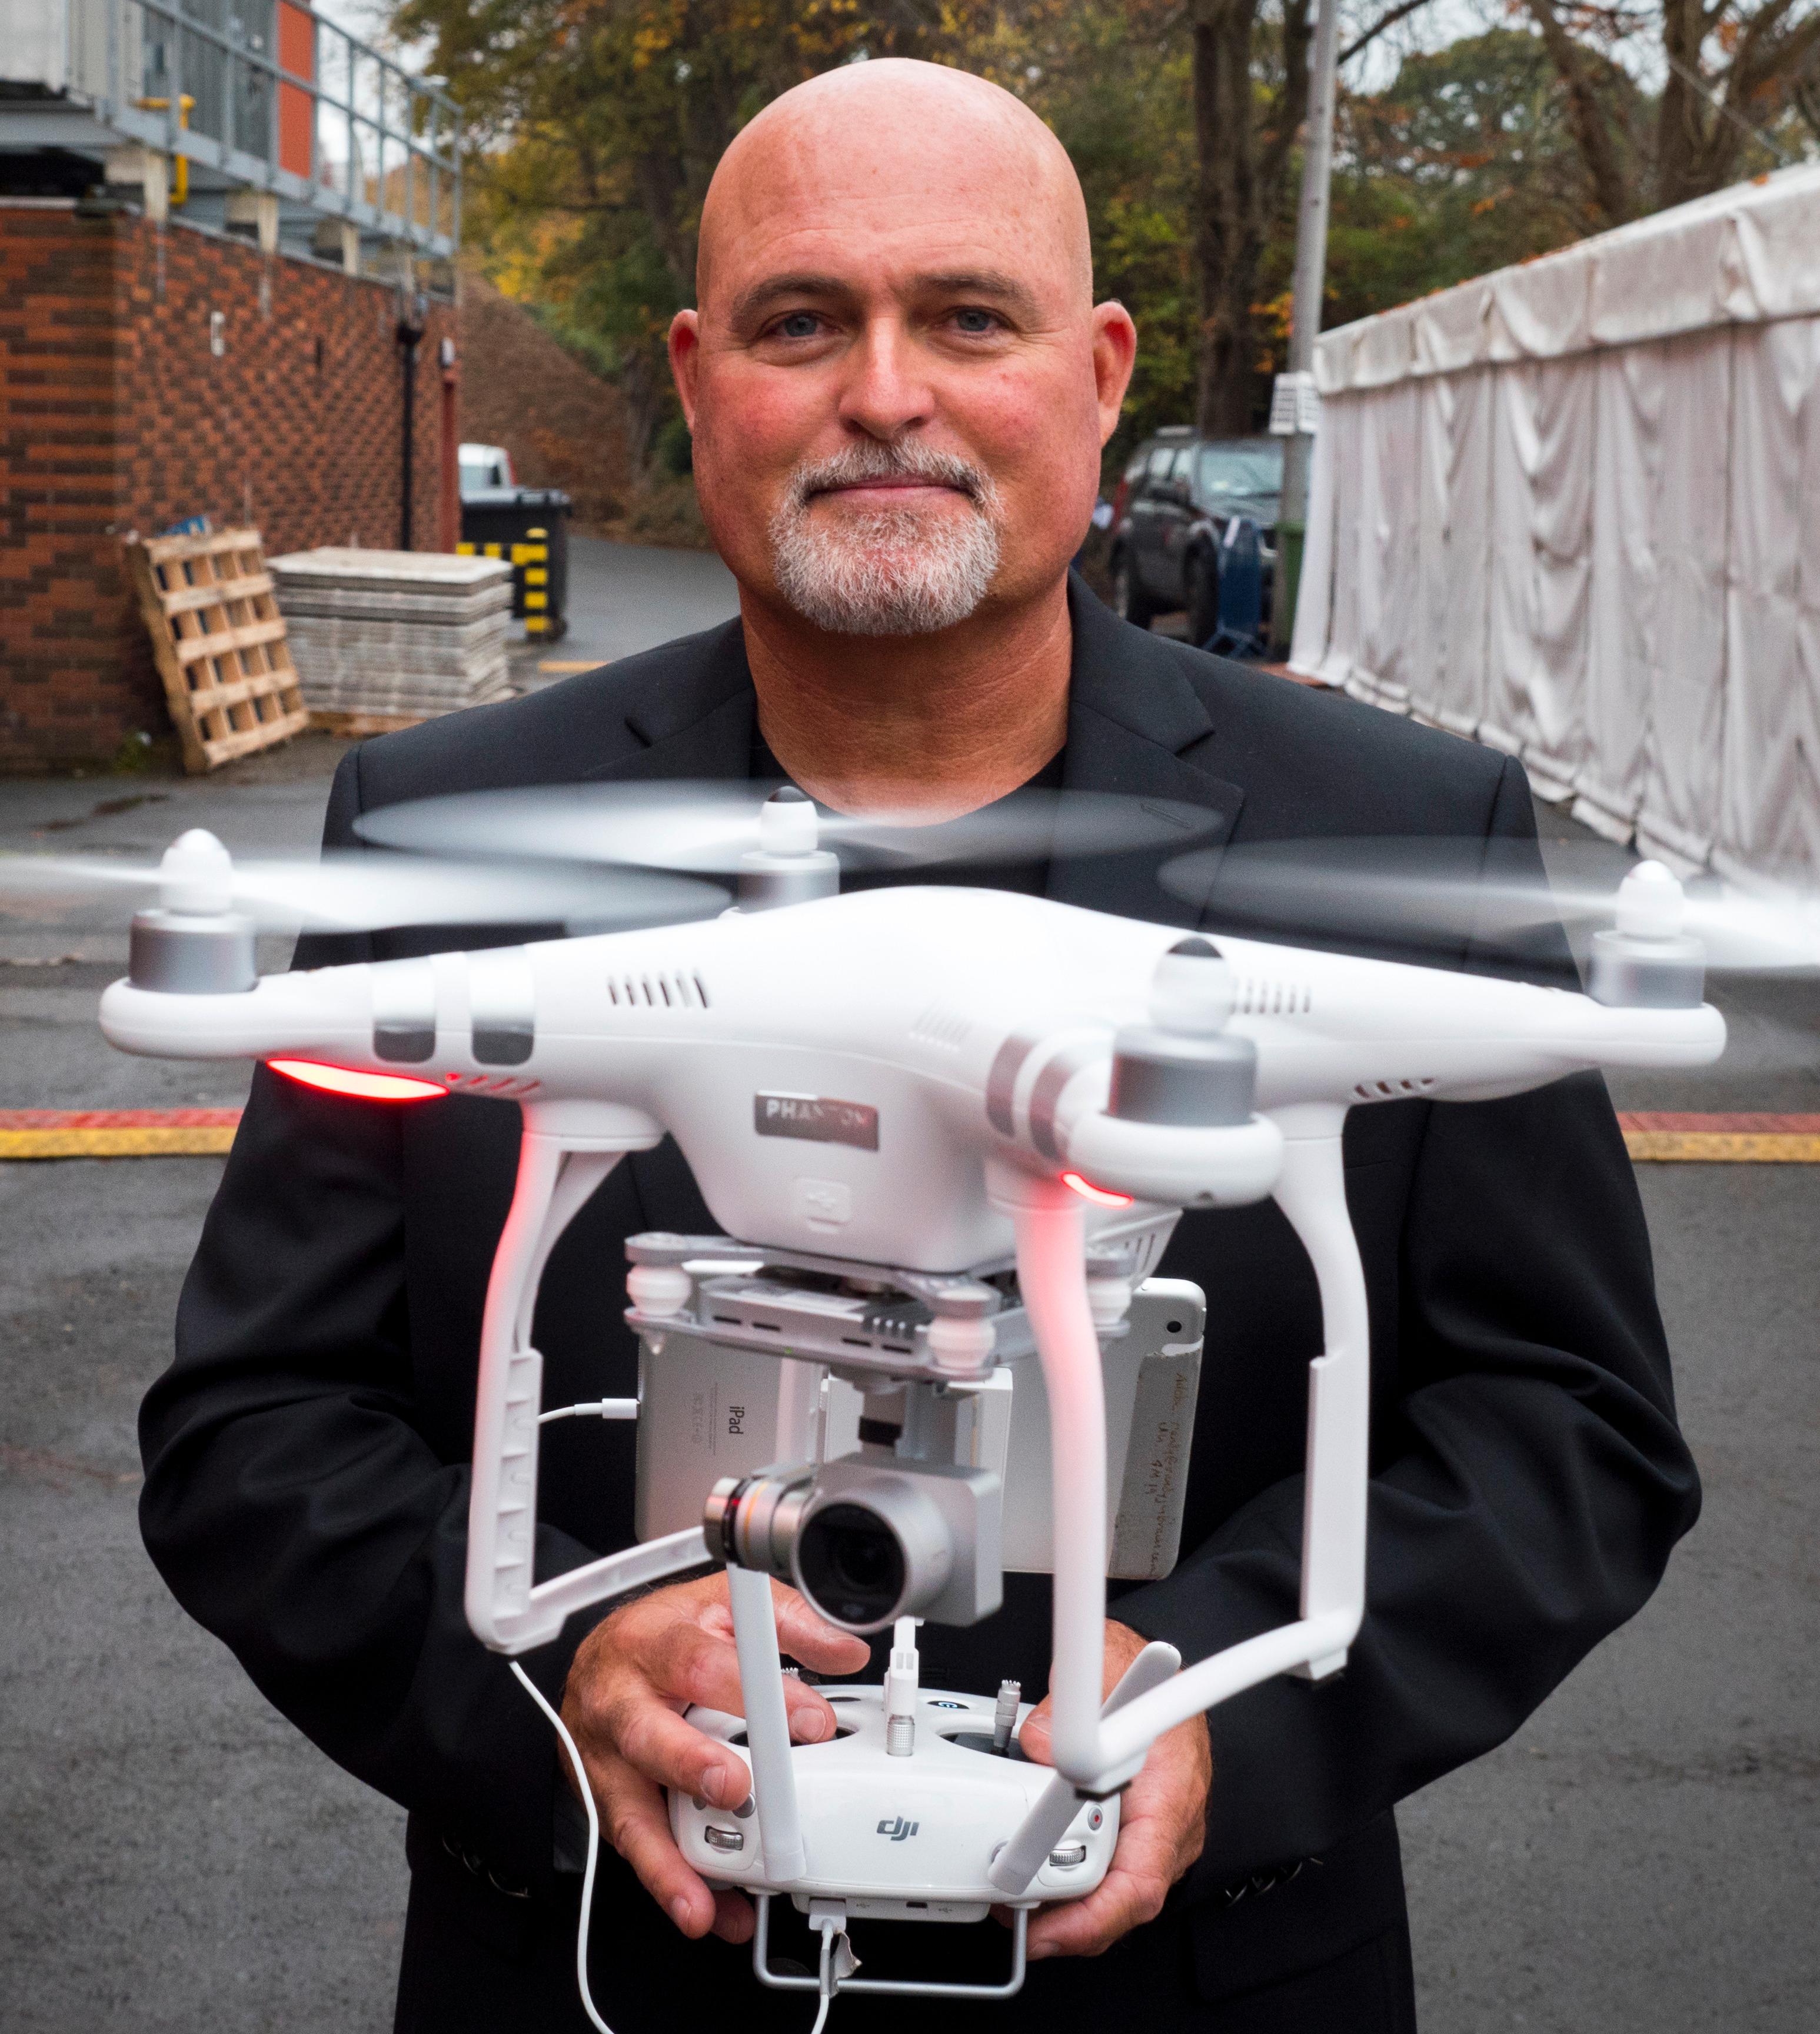 DJIs Randy Braun er ikke mye bekymret for droneflyvningens fremtid. Foto: Kristoffer Møllevik, Tek.no